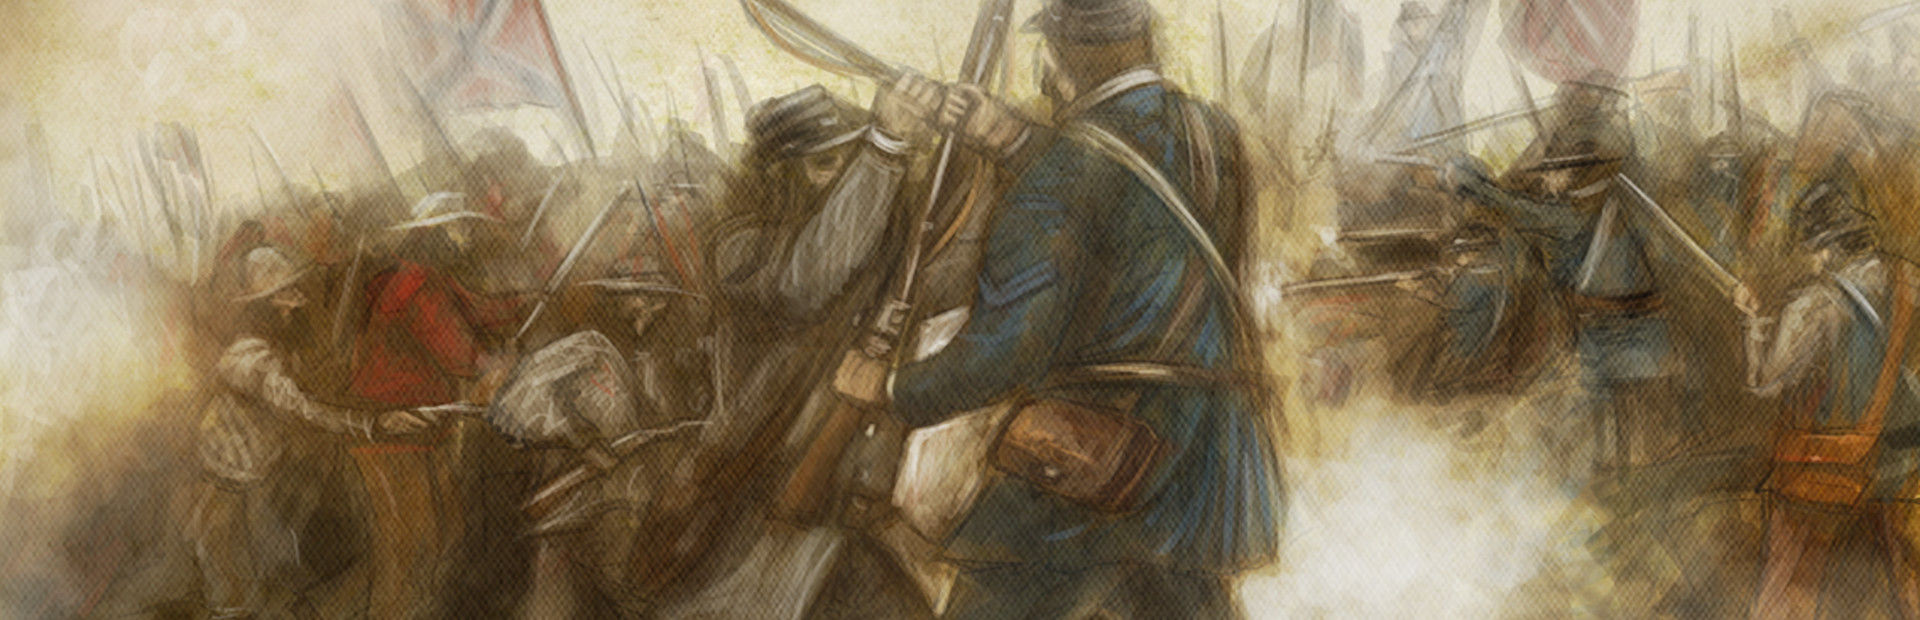 Civil War: 1862 cover image